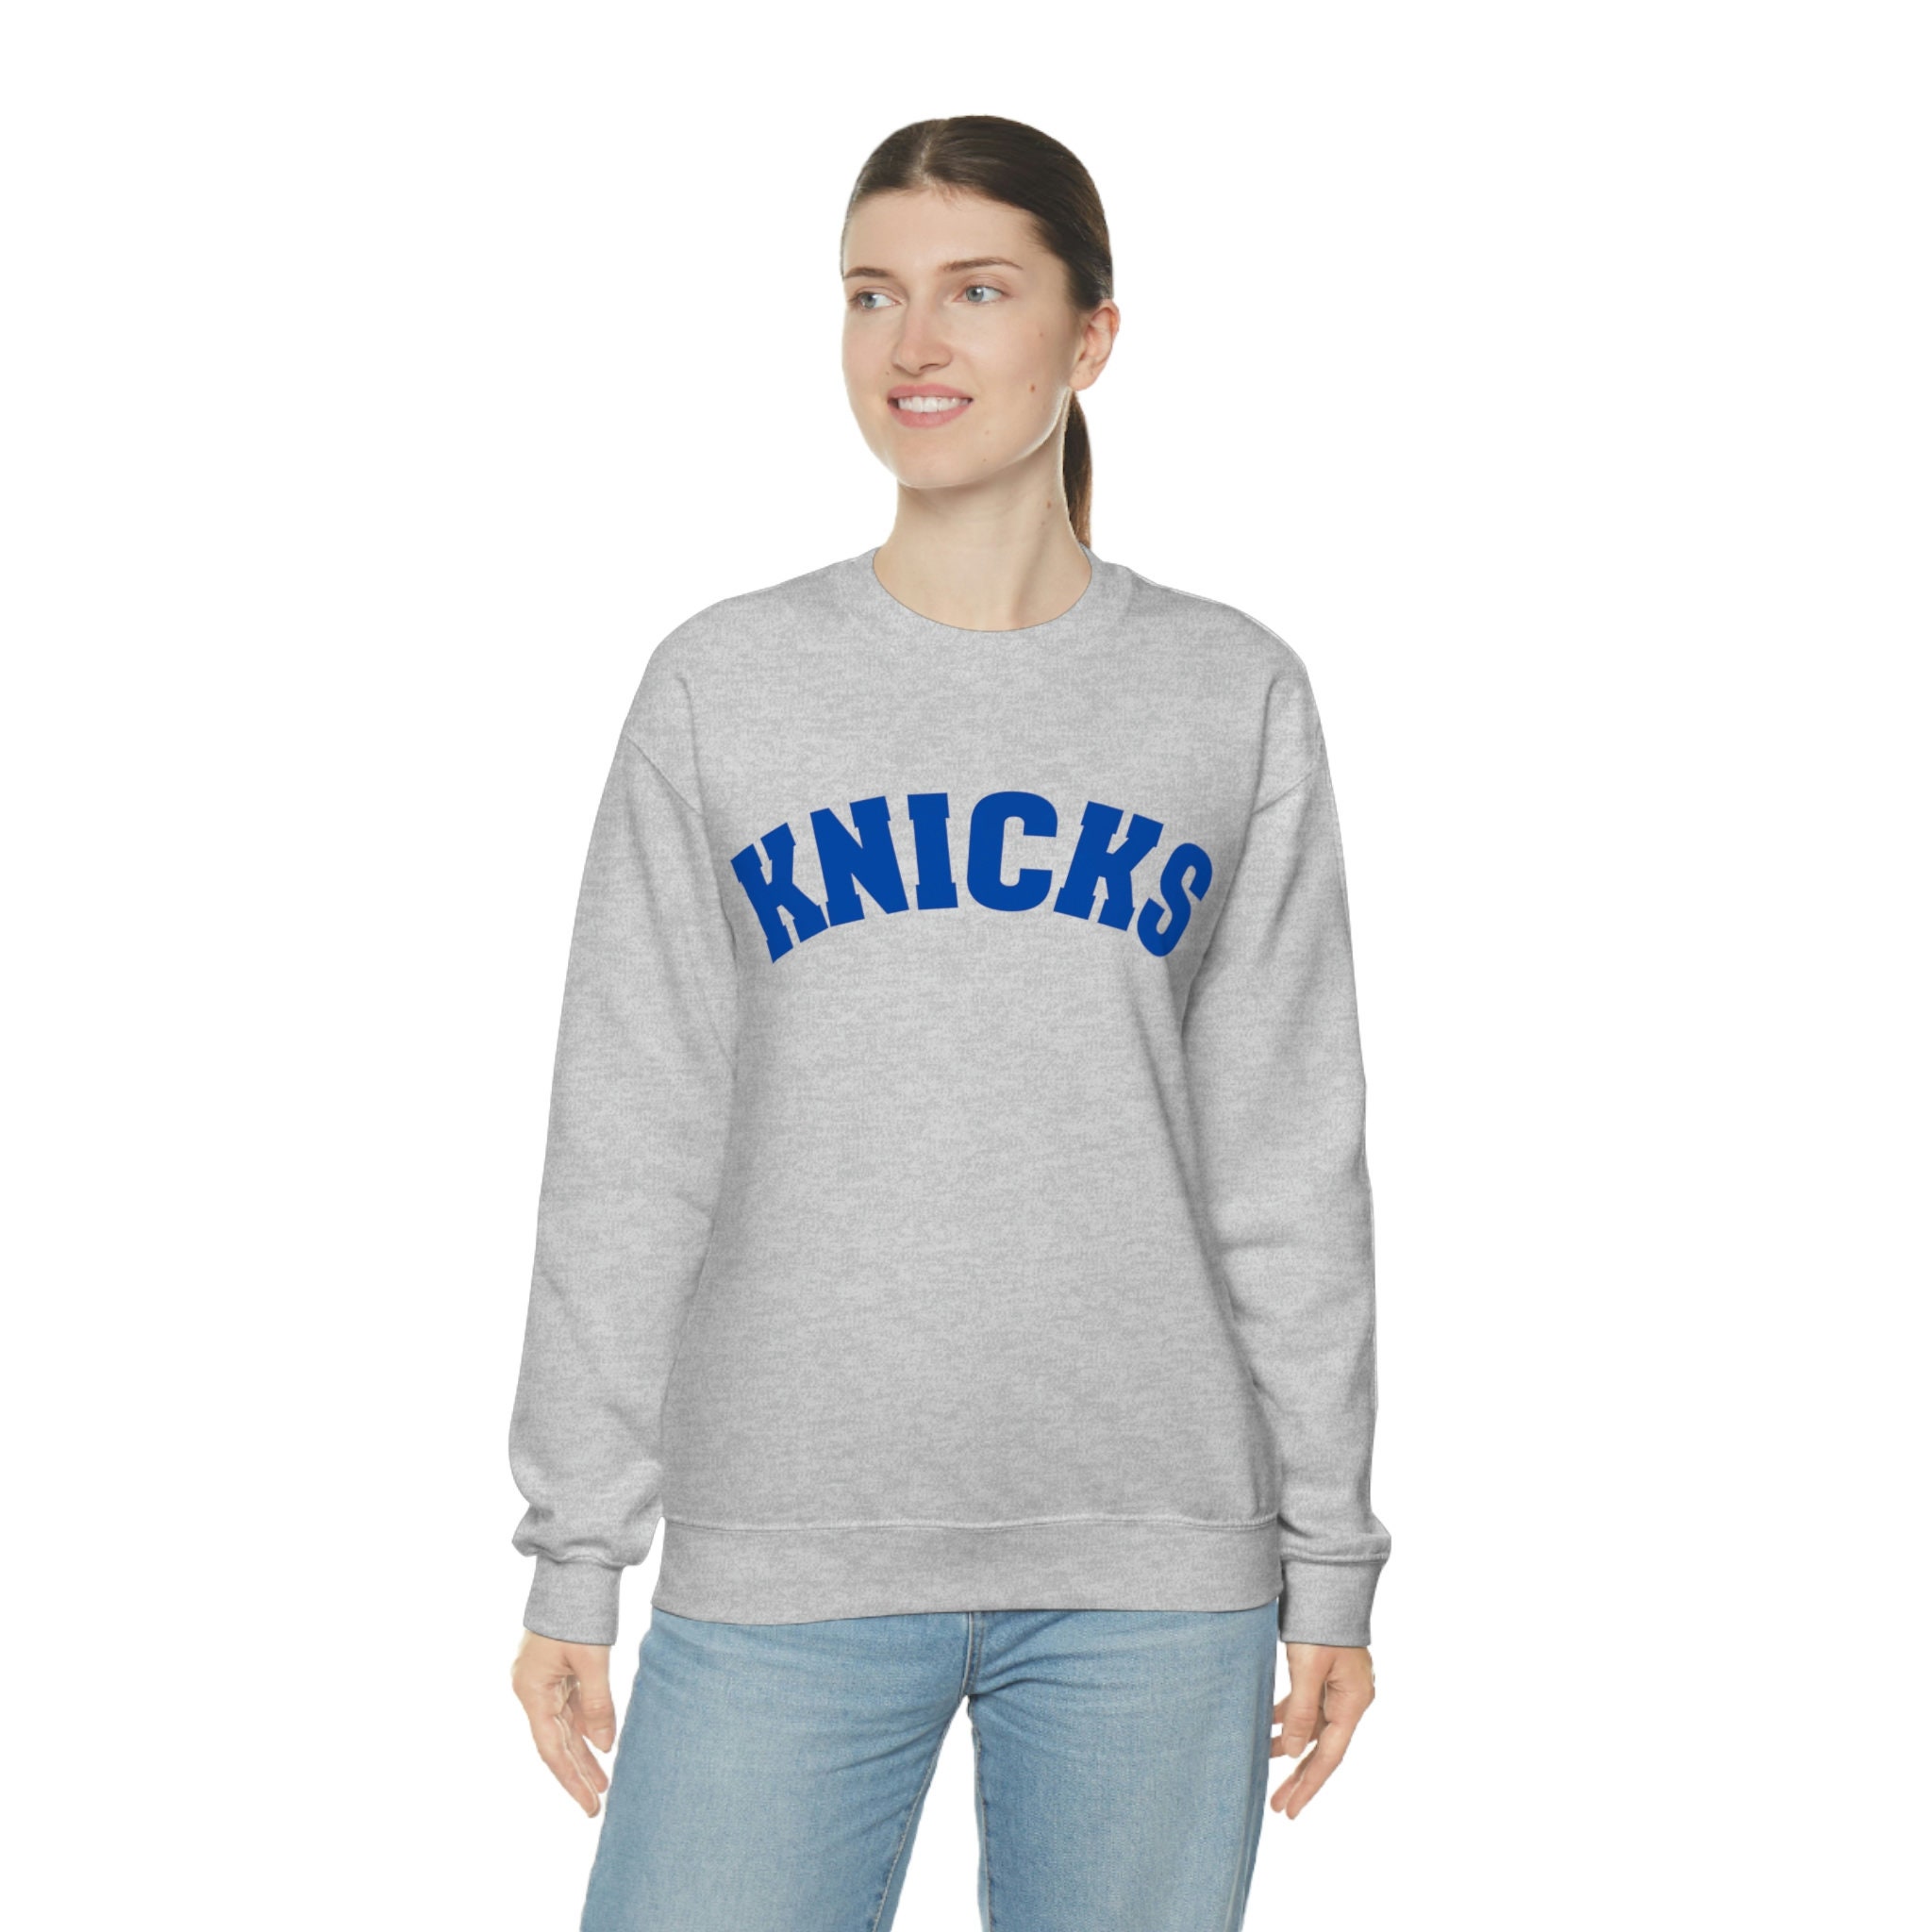 Joey Tribbiani Knicks Sweatshirt | Joey Friends Sweatshirt | Knicks  Sweatshirt